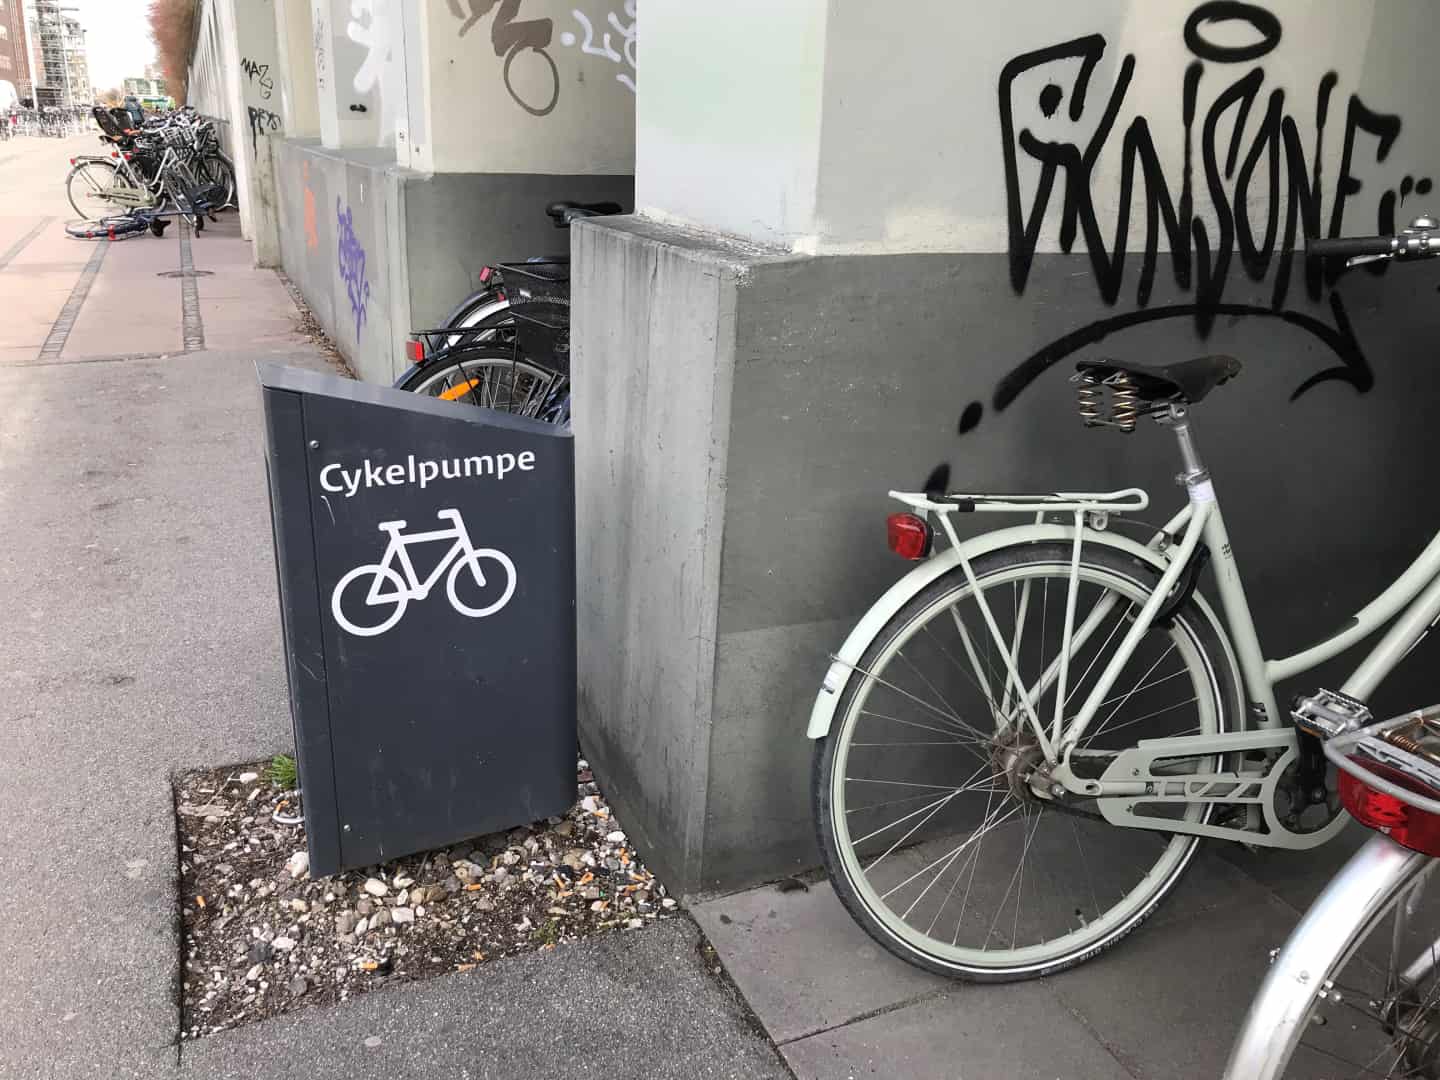 undrer sig: Folk bruger sjældent de gratis cykelpumper | ugeavisen.dk